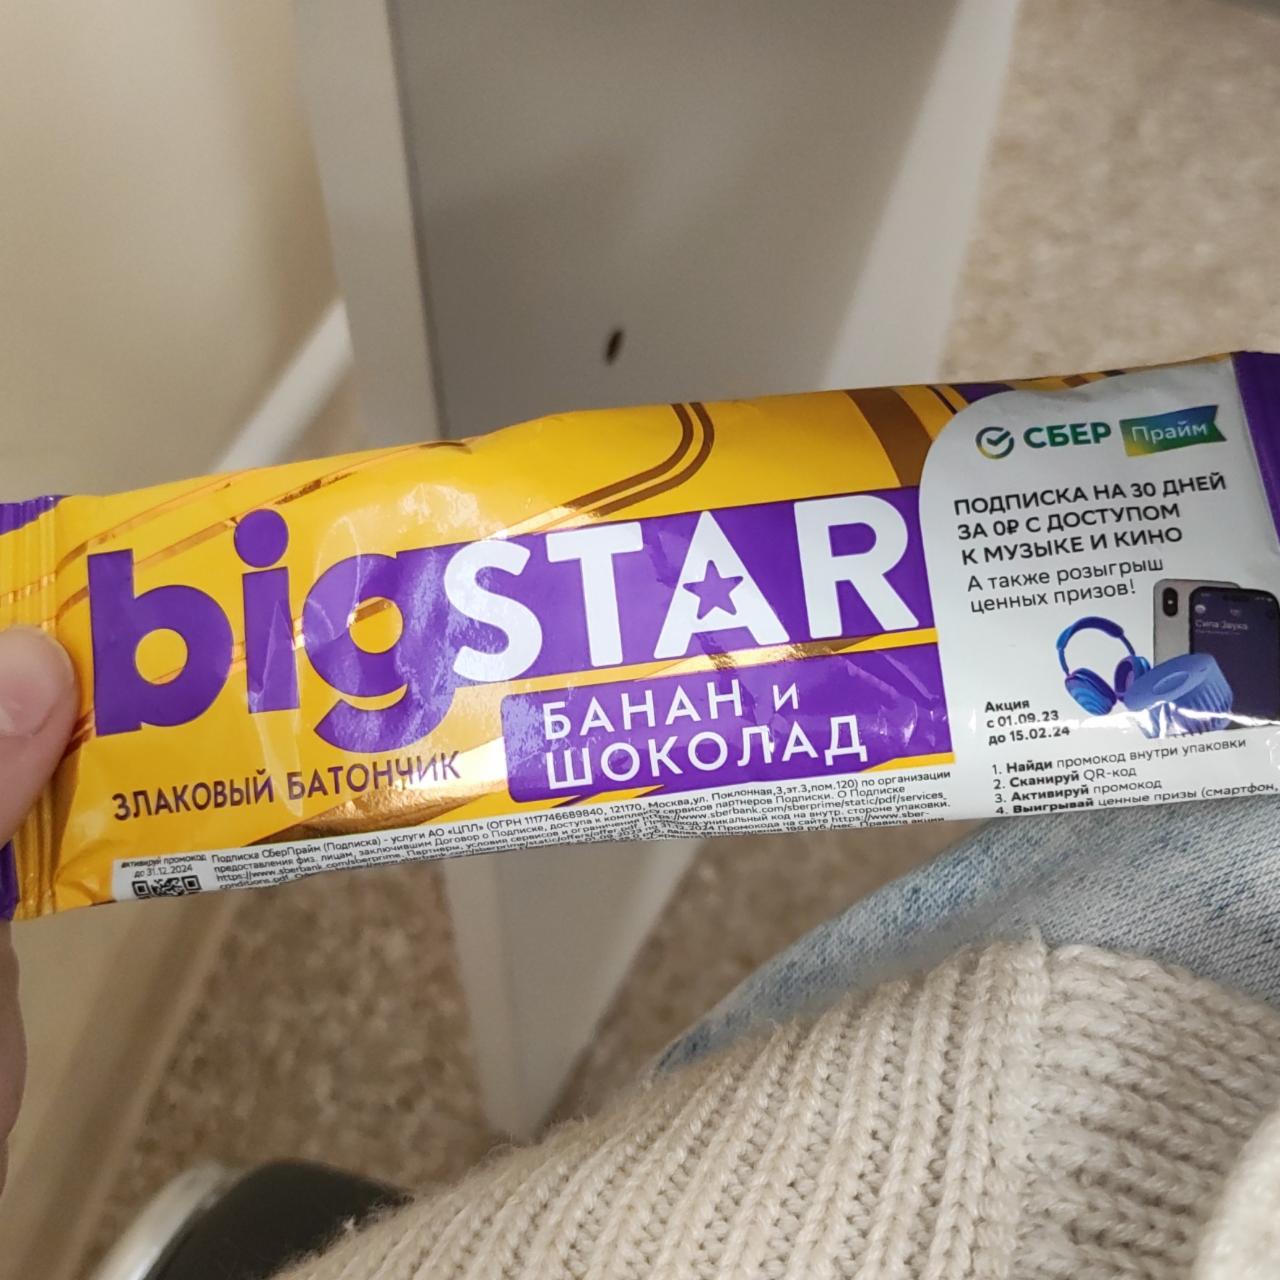 Фото - Злаковый батончик с бананом и шоколадом Big Star